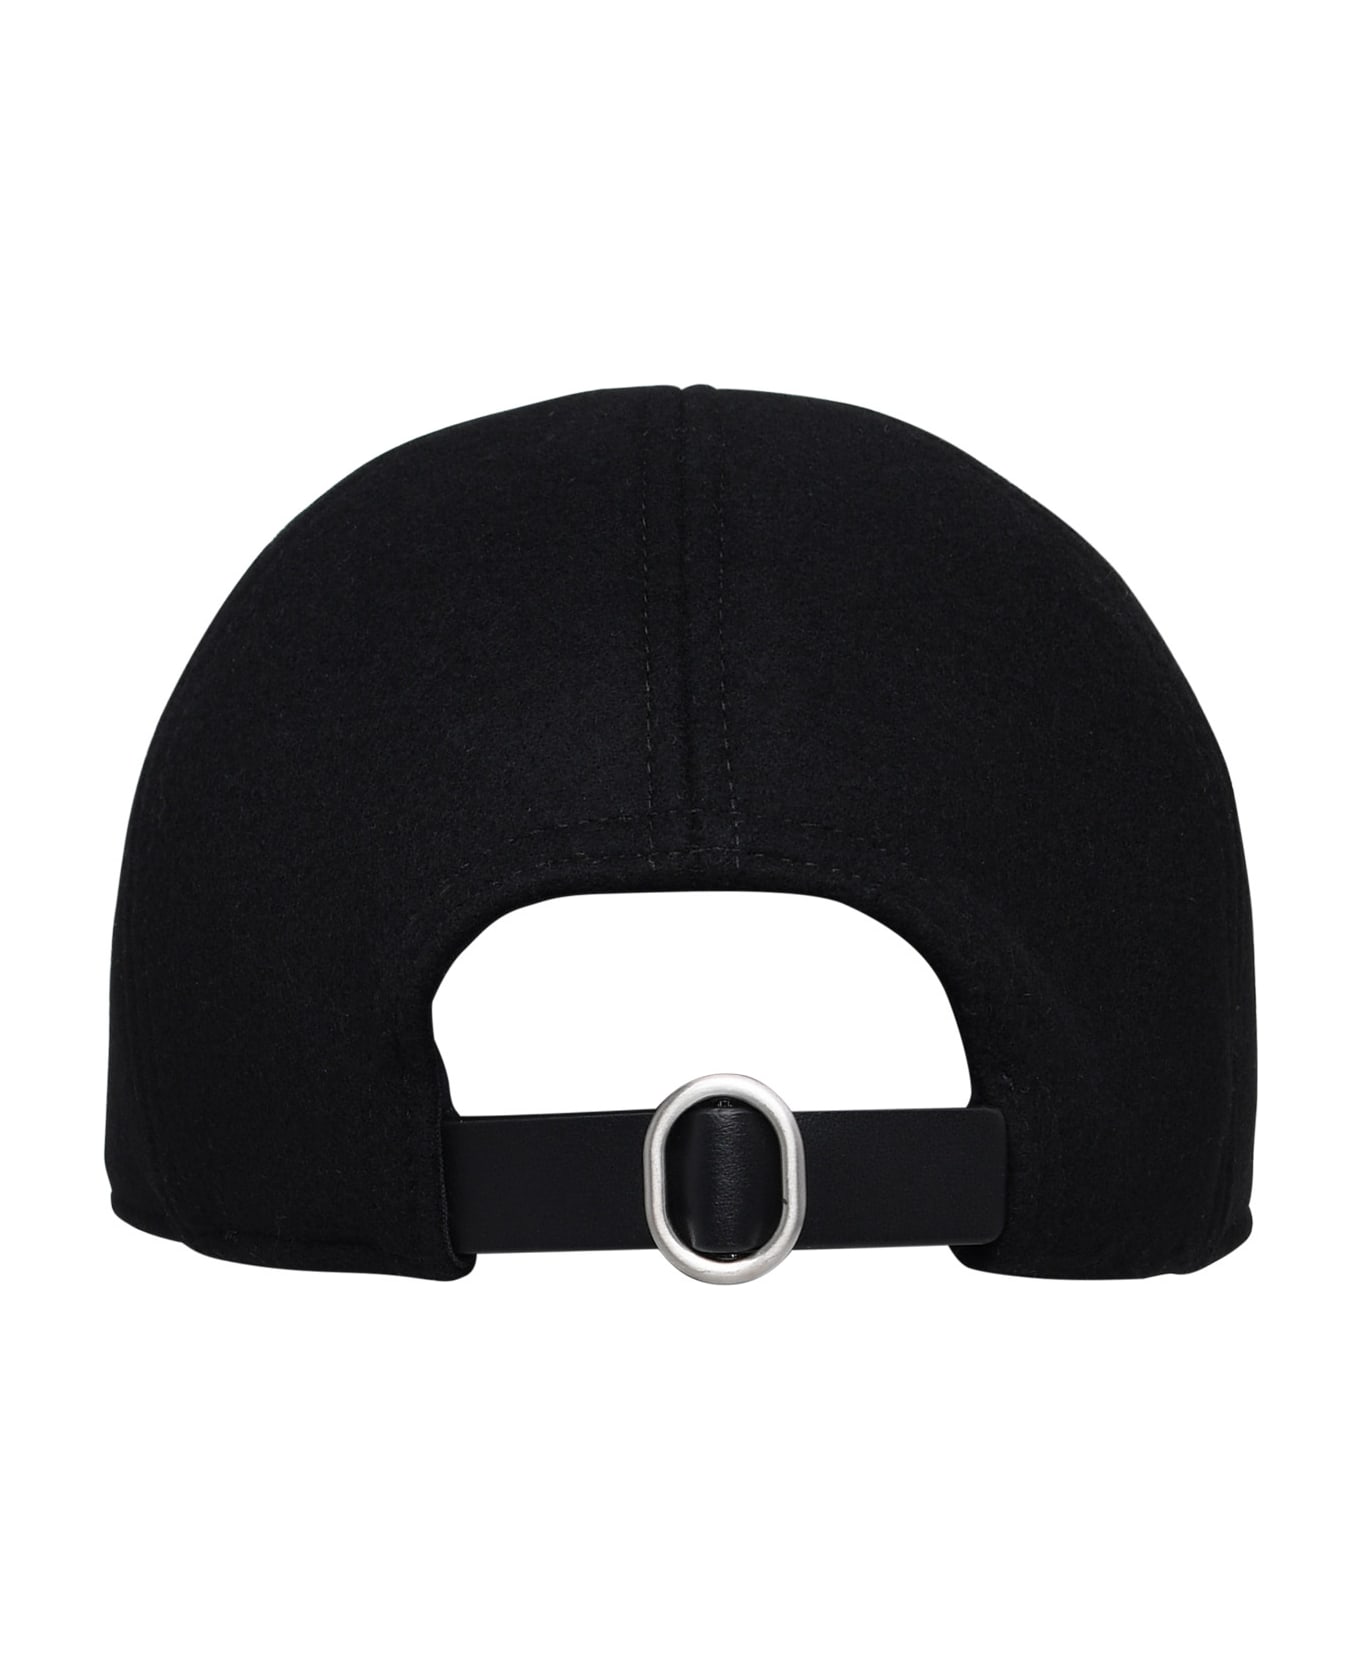 Jil Sander Black Cashmere Hat - Black